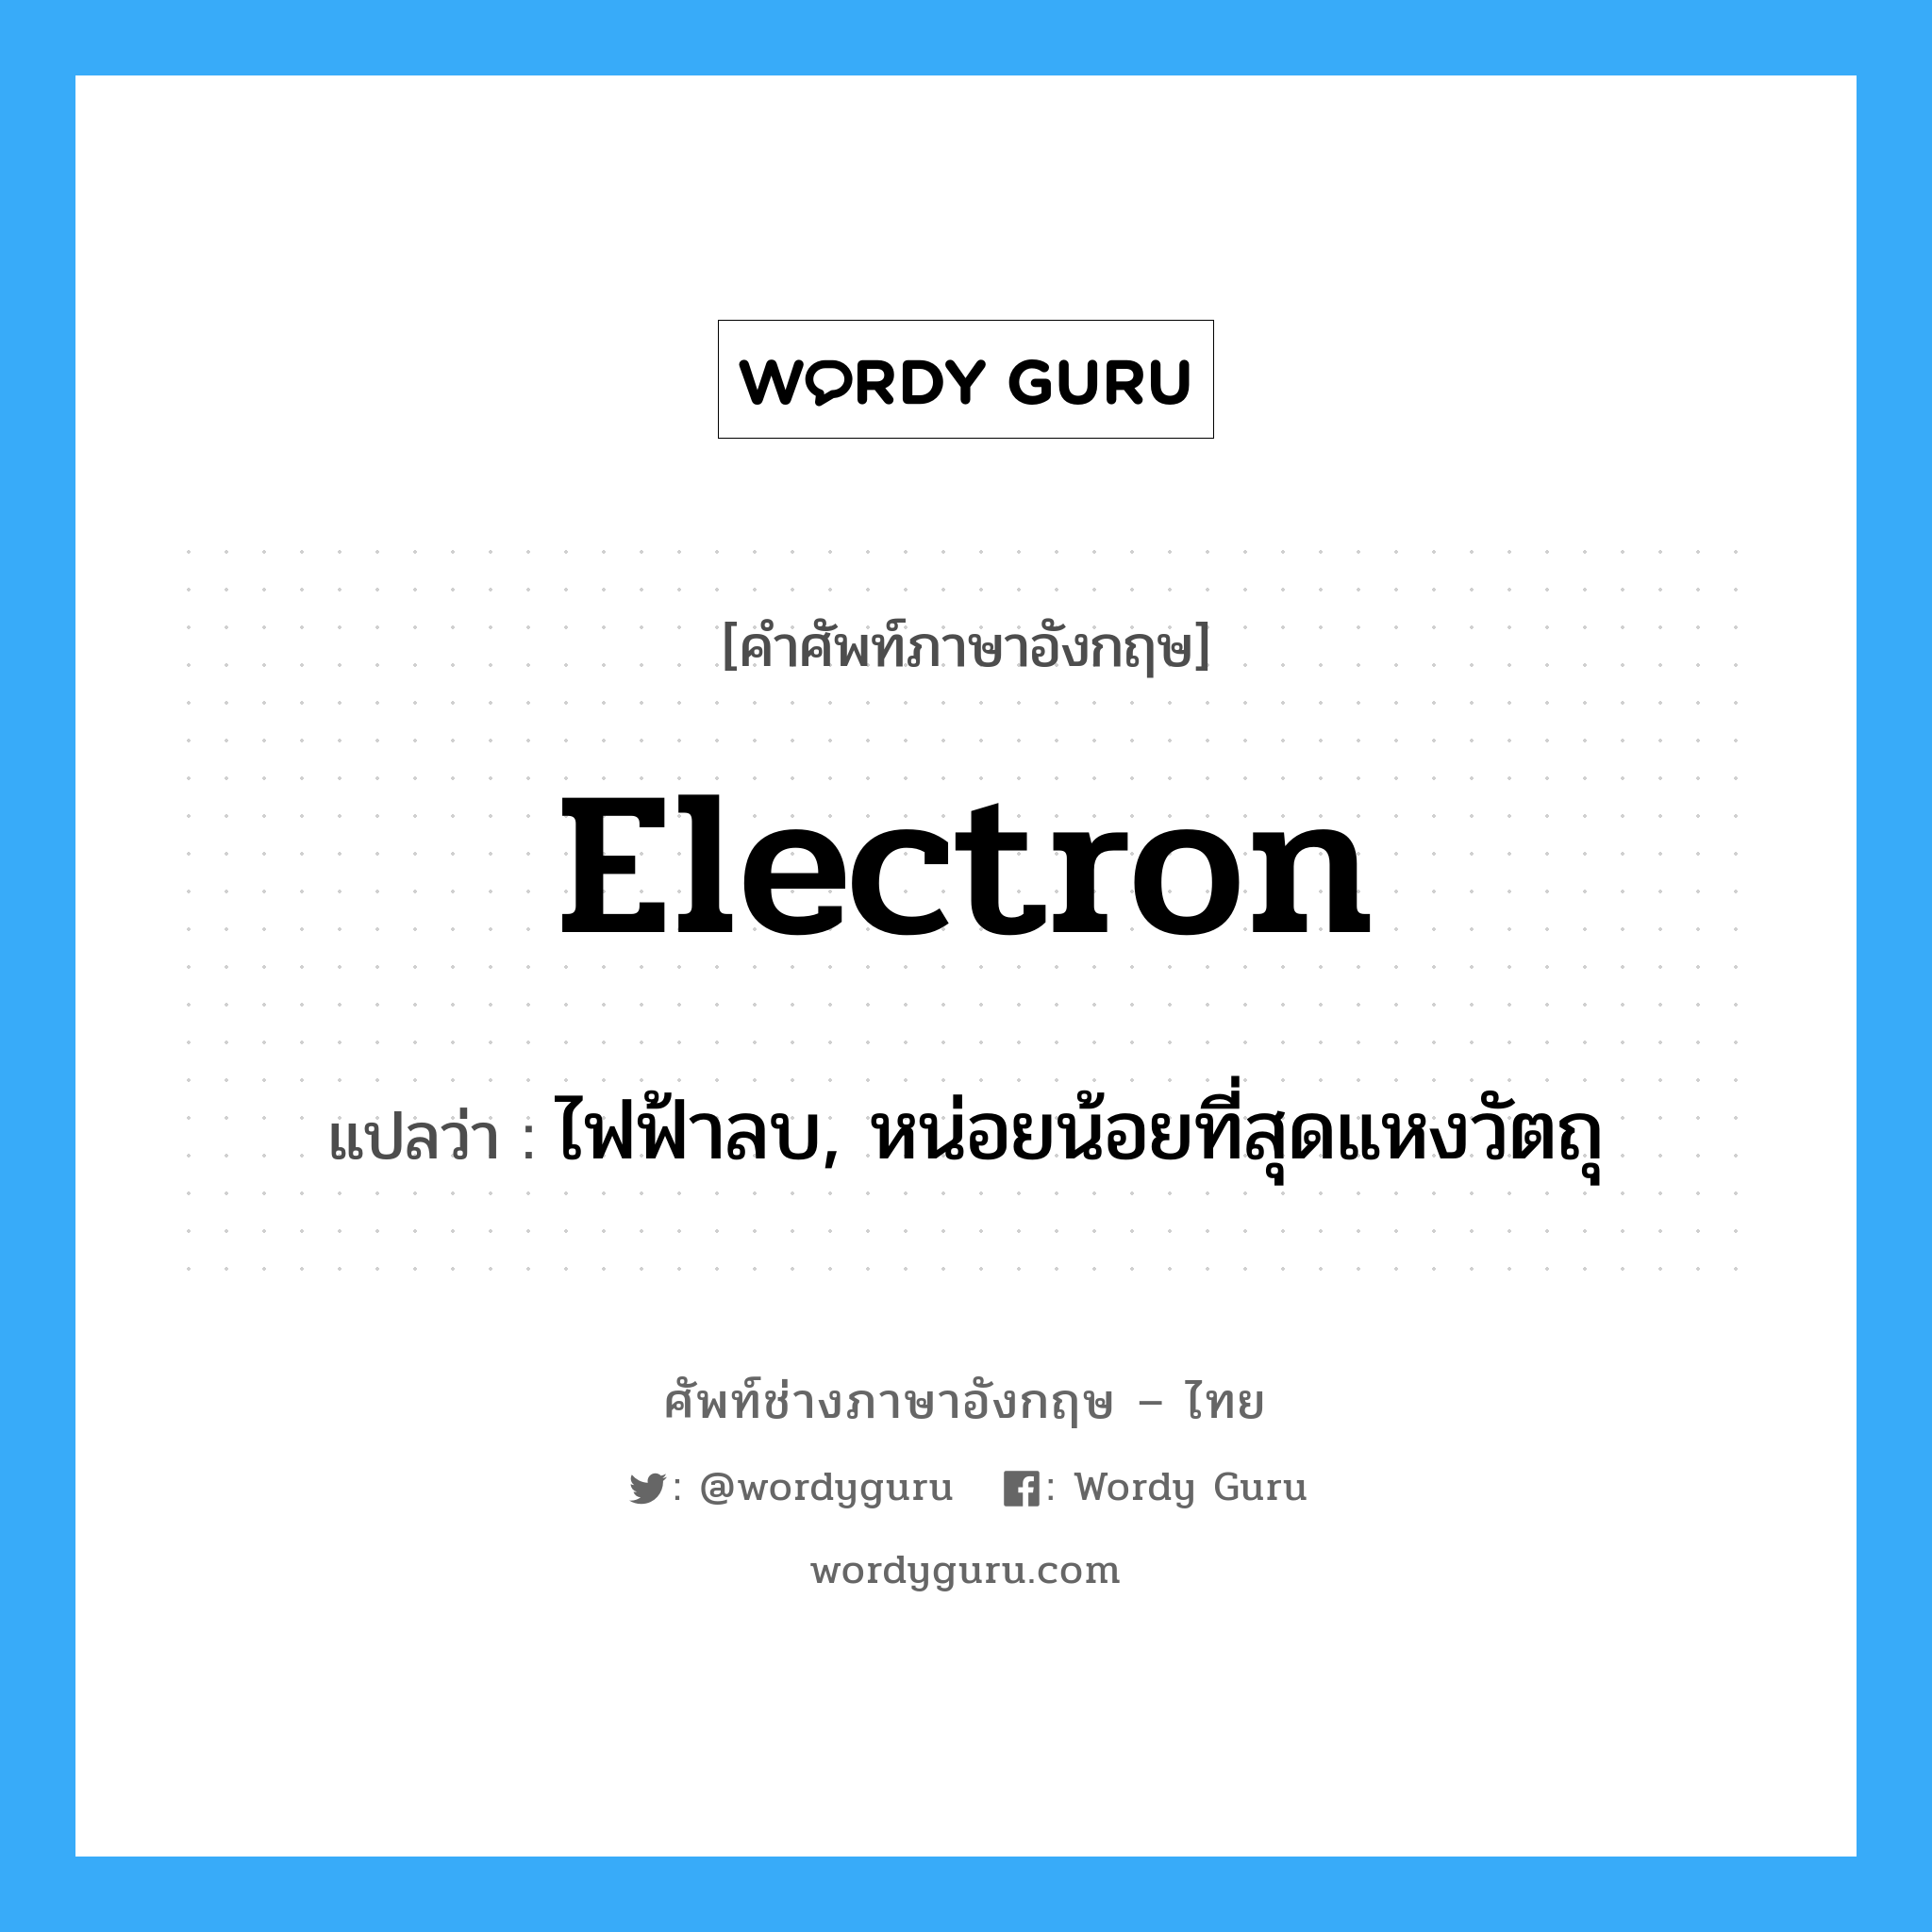 ไฟฟ้าลบ, หน่อยน้อยที่สุดแหงวัตถุ ภาษาอังกฤษ?, คำศัพท์ช่างภาษาอังกฤษ - ไทย ไฟฟ้าลบ, หน่อยน้อยที่สุดแหงวัตถุ คำศัพท์ภาษาอังกฤษ ไฟฟ้าลบ, หน่อยน้อยที่สุดแหงวัตถุ แปลว่า electron